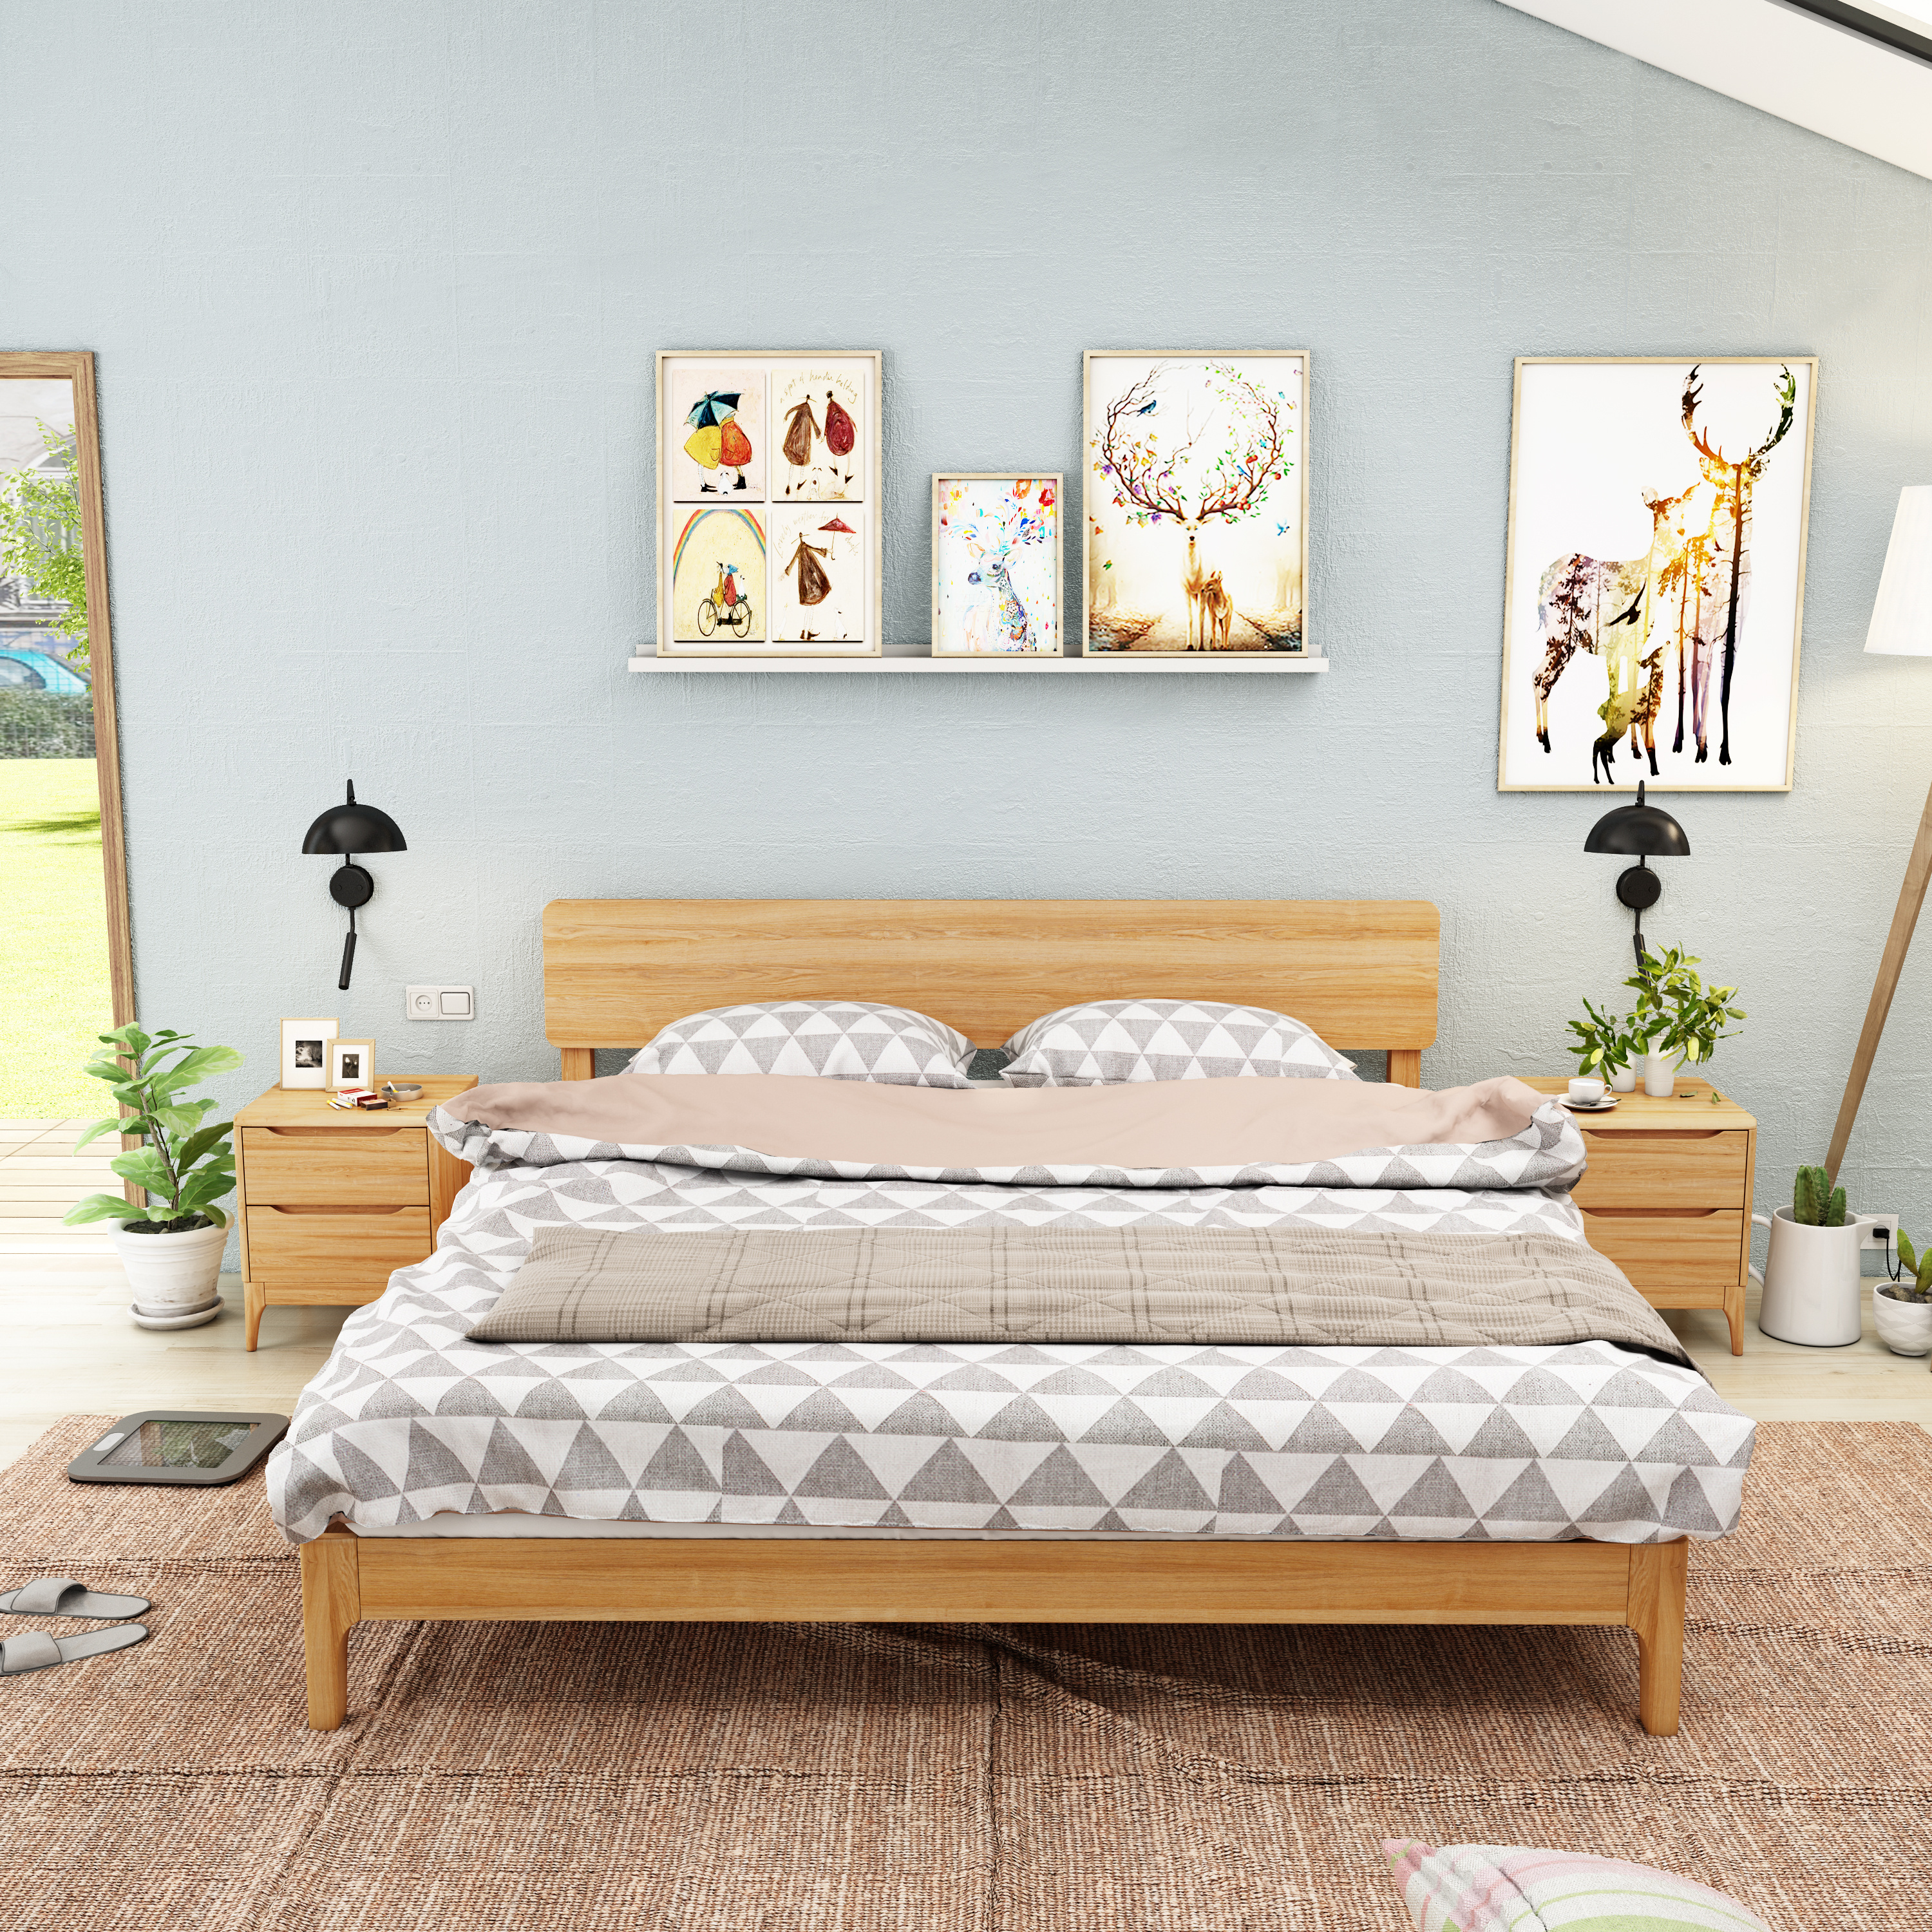 北欧风格实木床,实木家具设计一一《卧室晨光》 家具3D效果设计 ,卧室设计